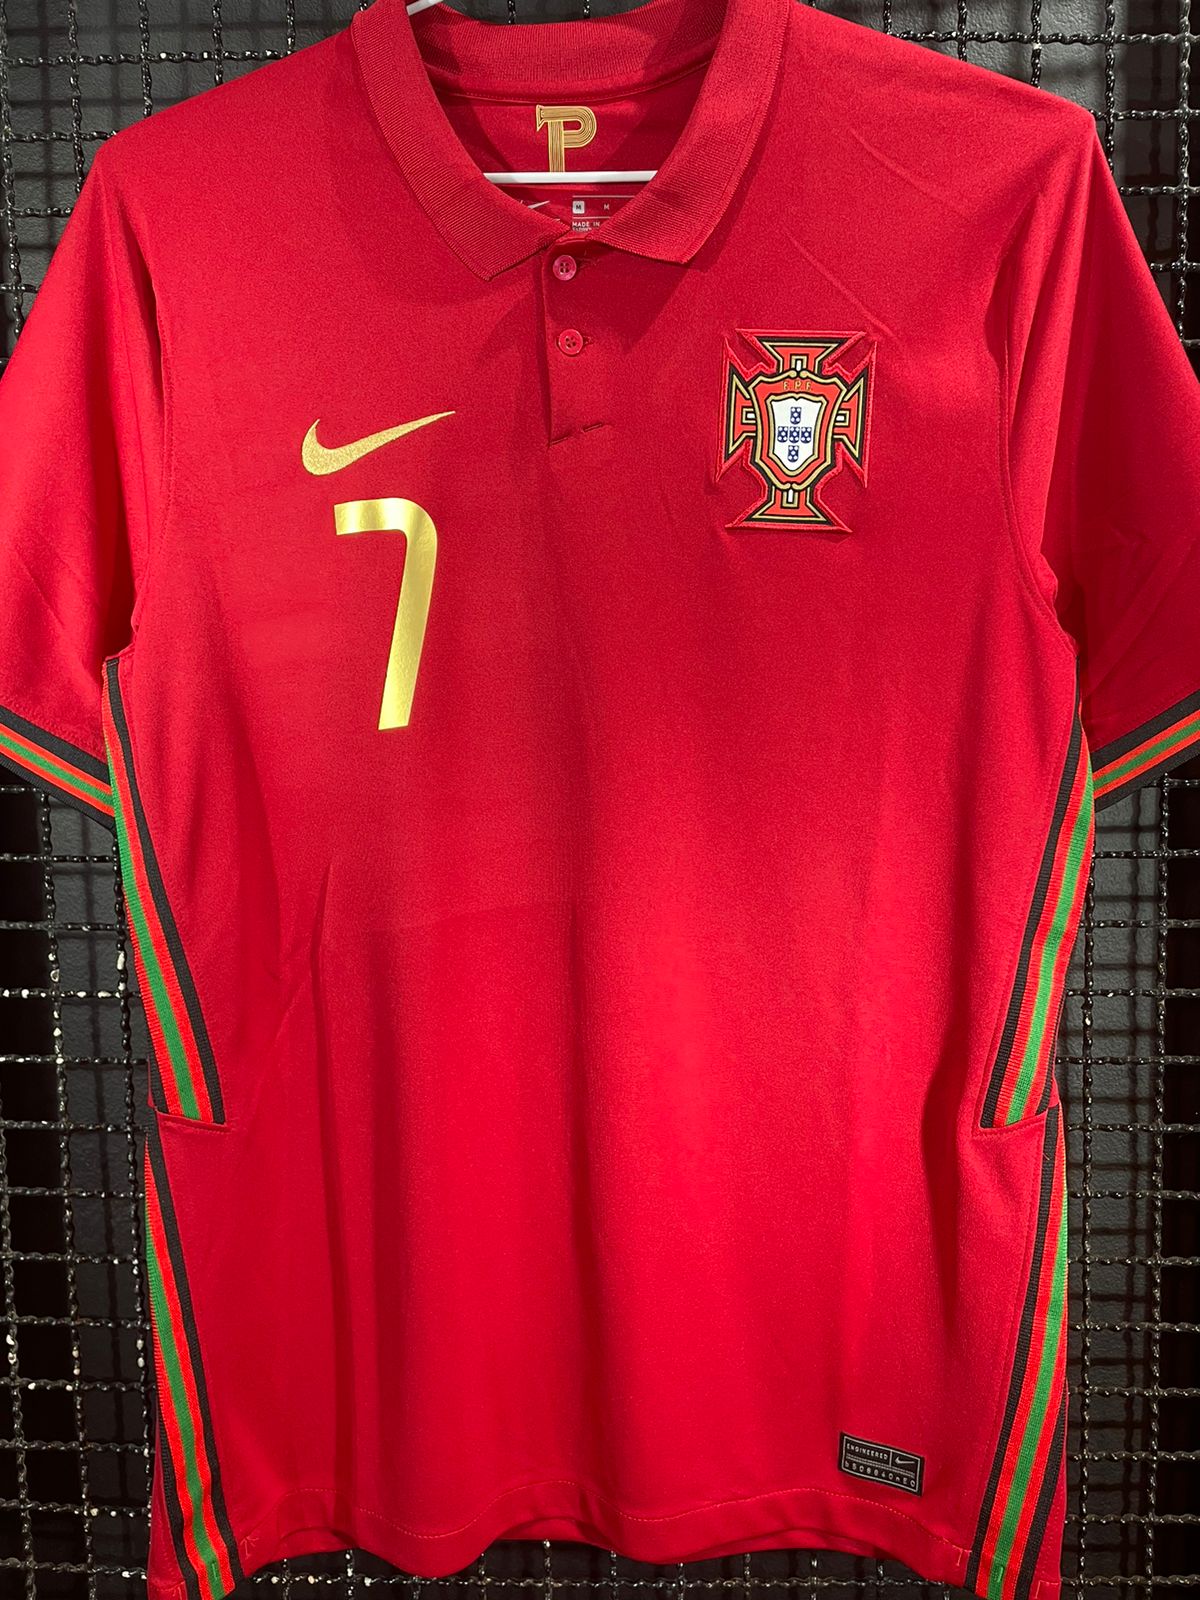 Camisa Nike Portugal I 2014